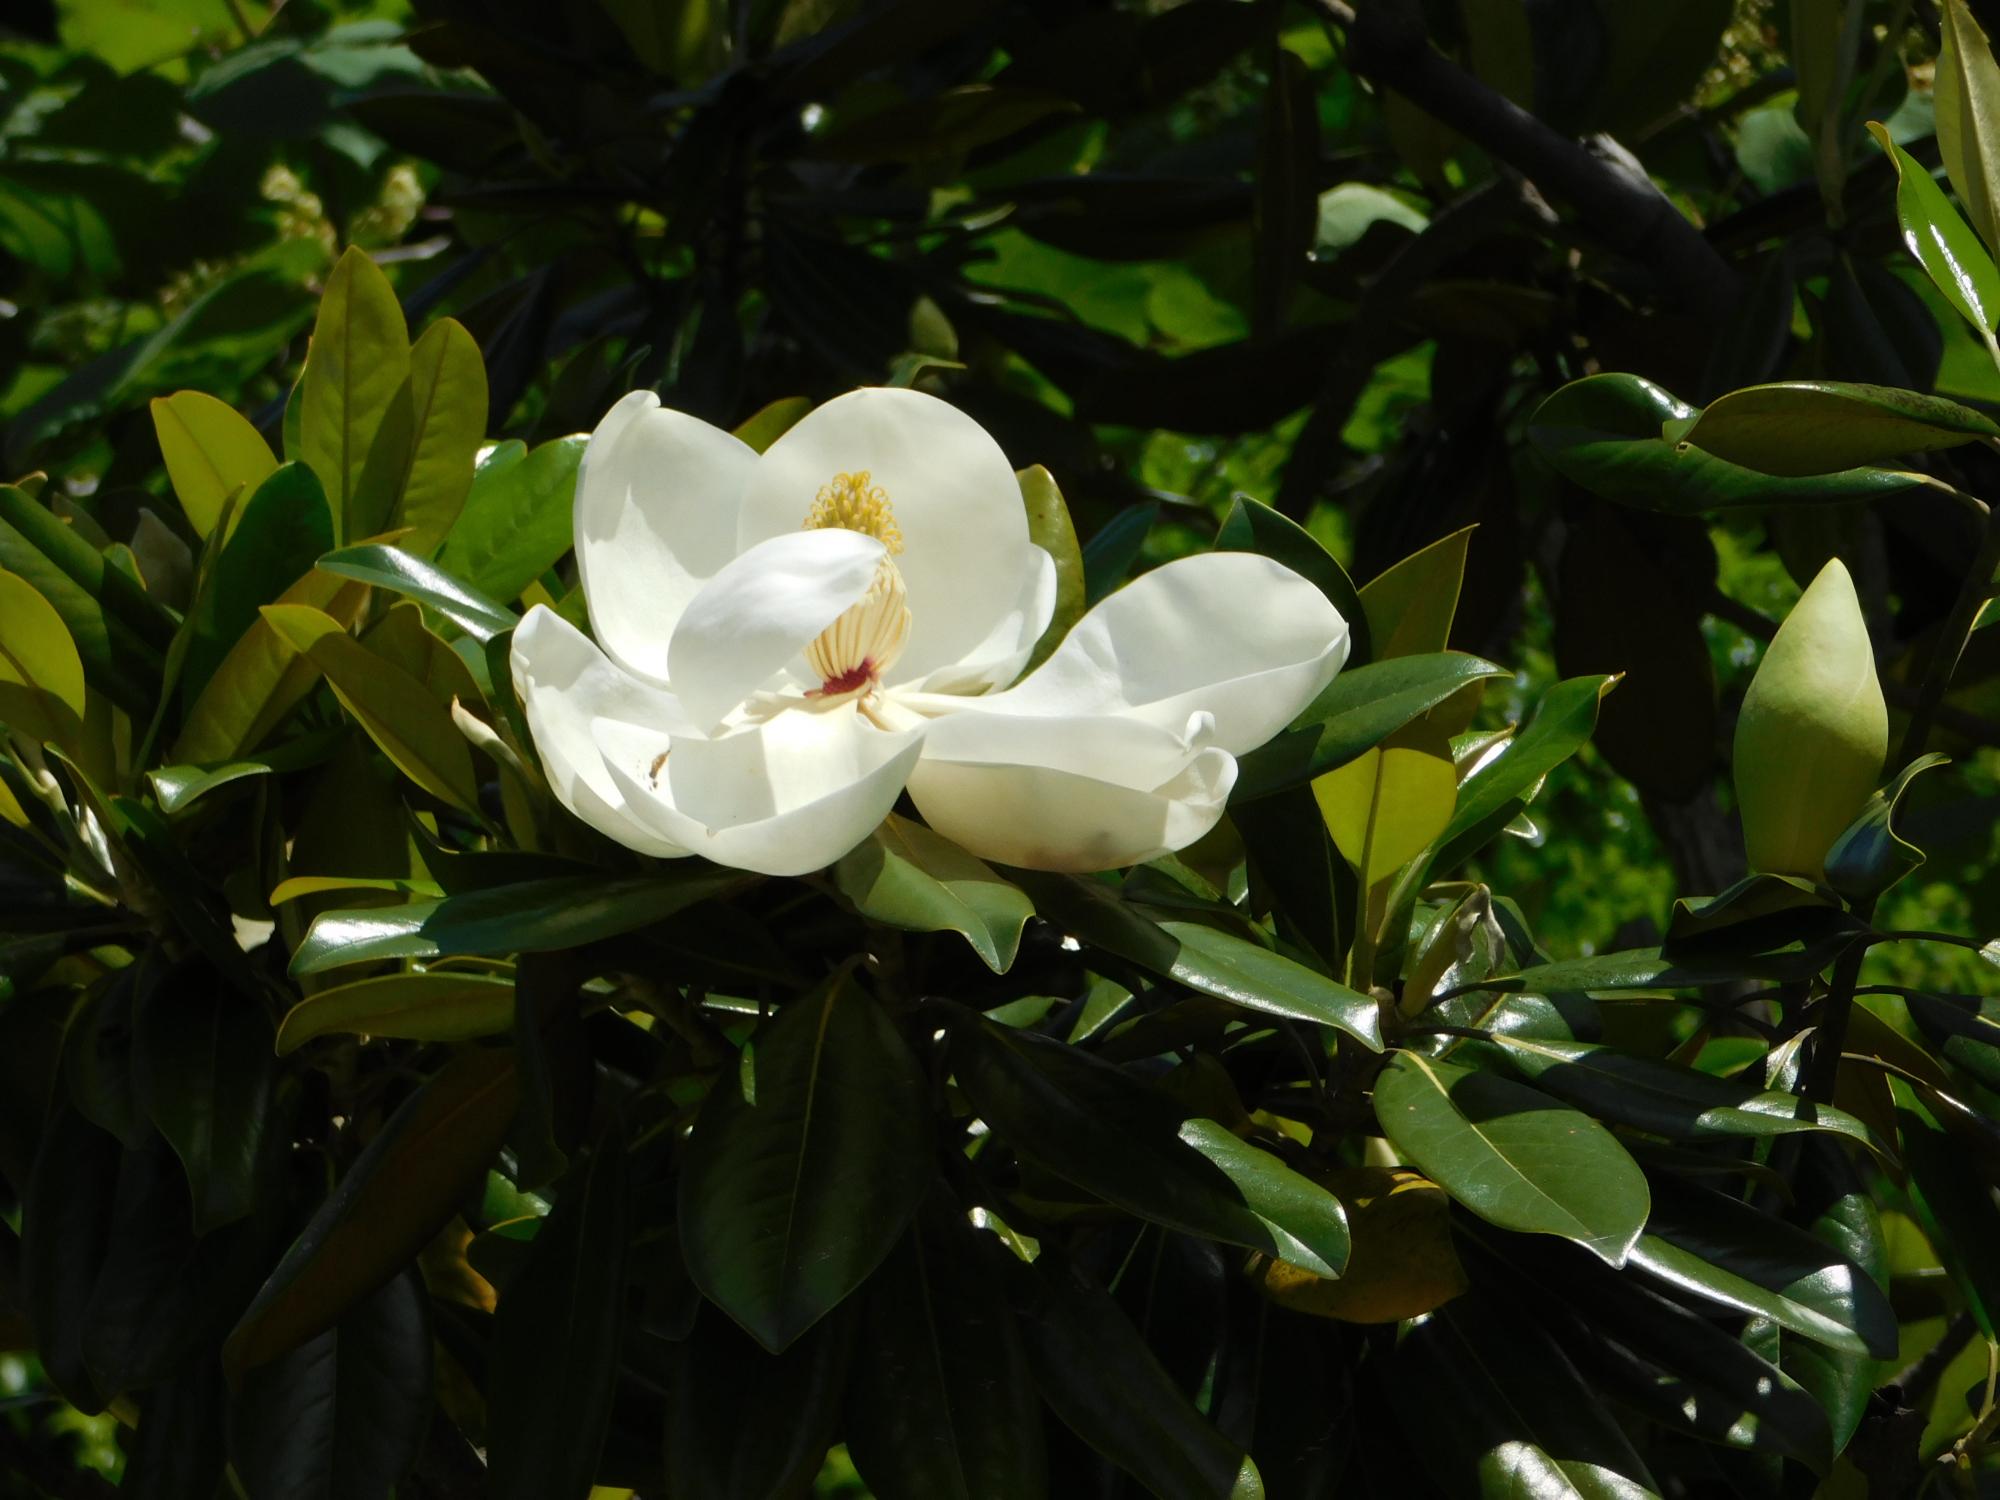 このはな館北側の薬草園の角にあるタイサンボクの白い花です。直径20cm程もある大輪の花です。